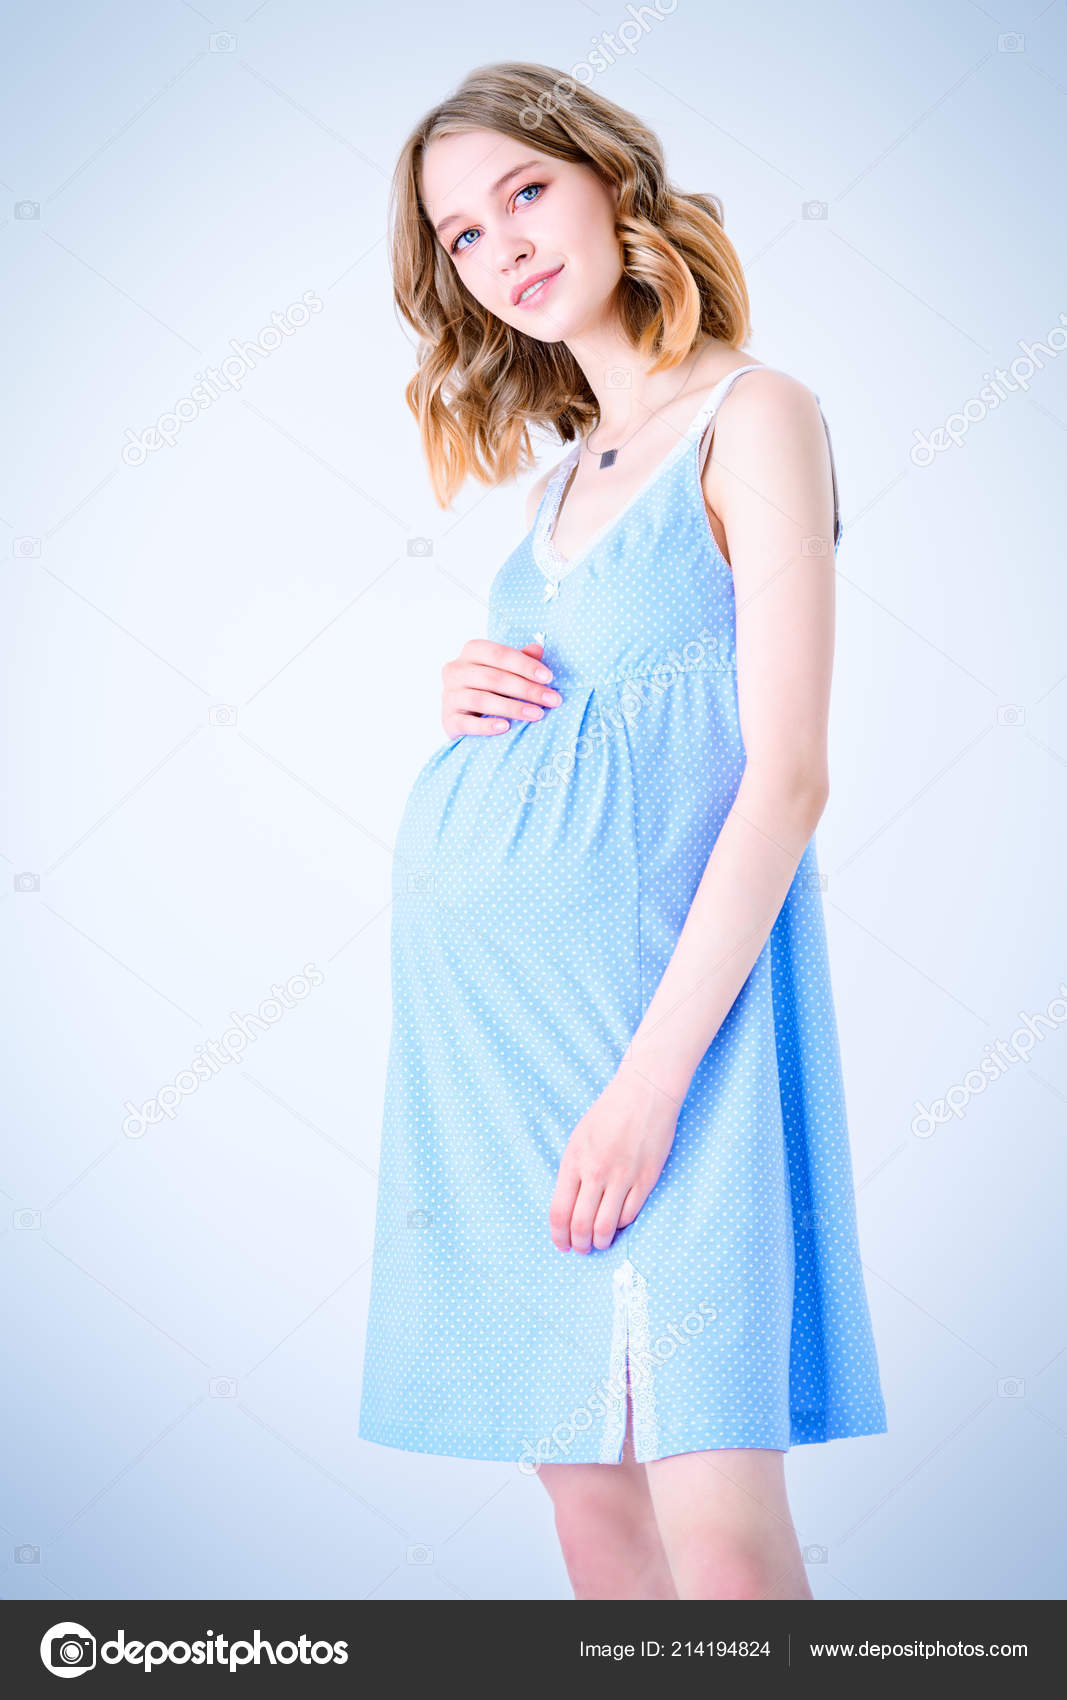 women in blue dress